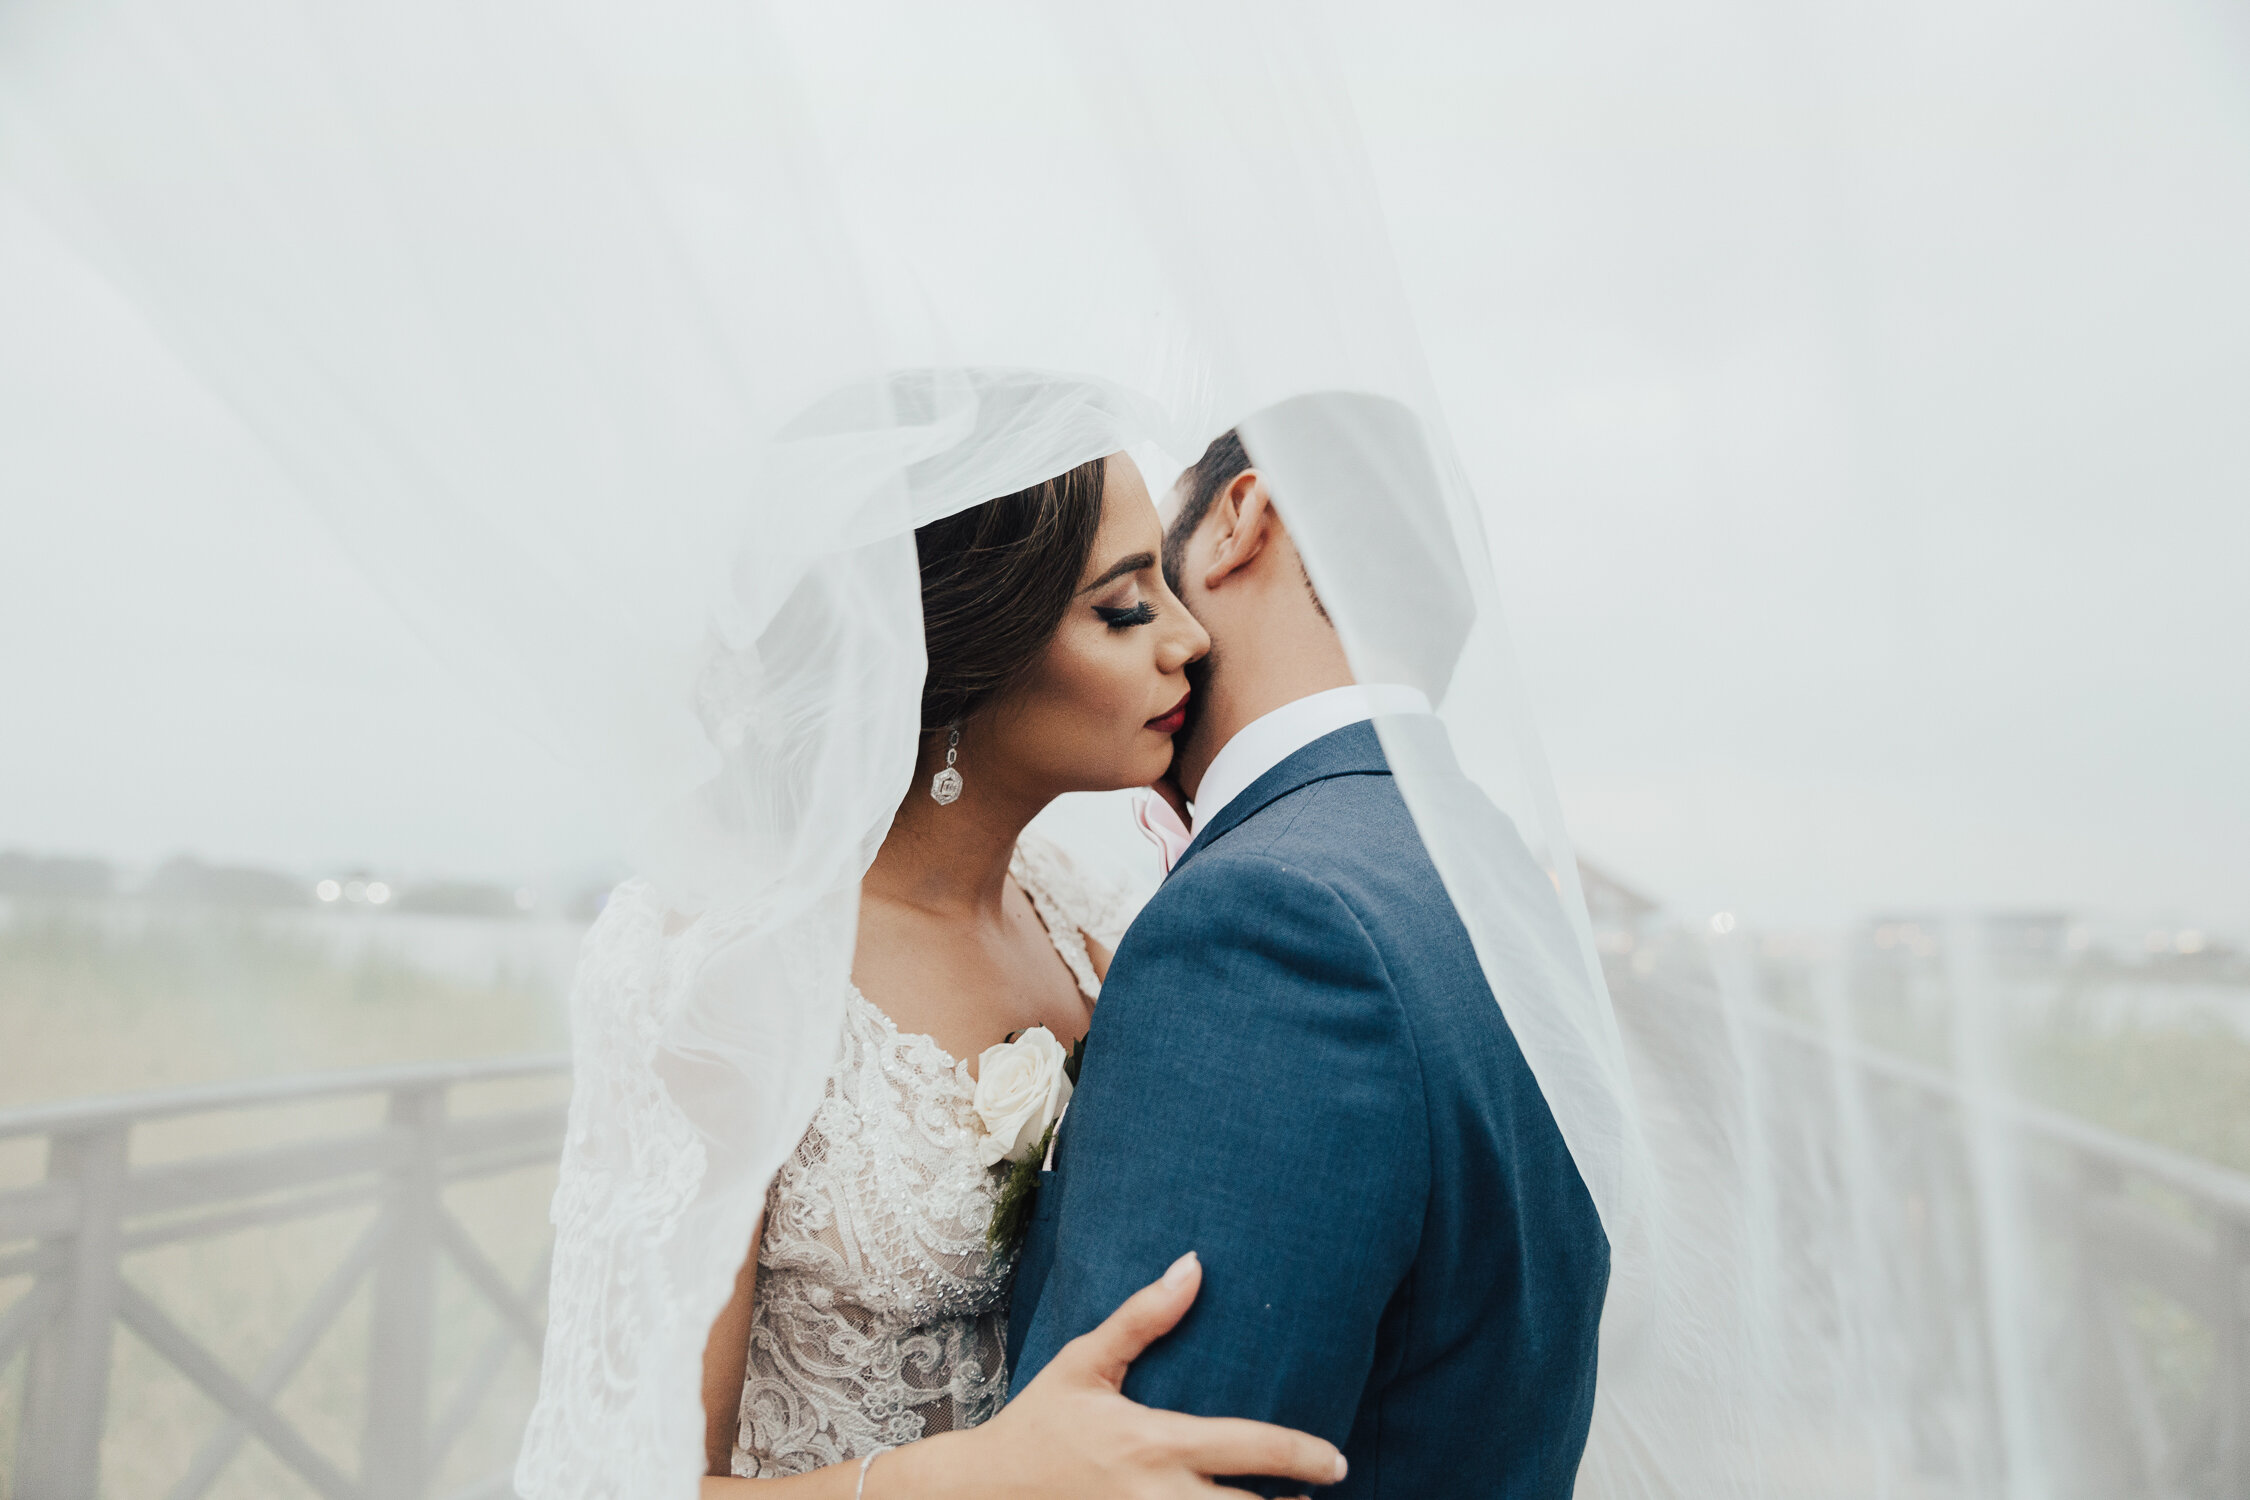 Michelle-Agurto-Fotografia-Bodas-Ecuador-Destination-Wedding-Photographer-Guayaquil-Parque-Historico-Belen-Danny-132.JPG